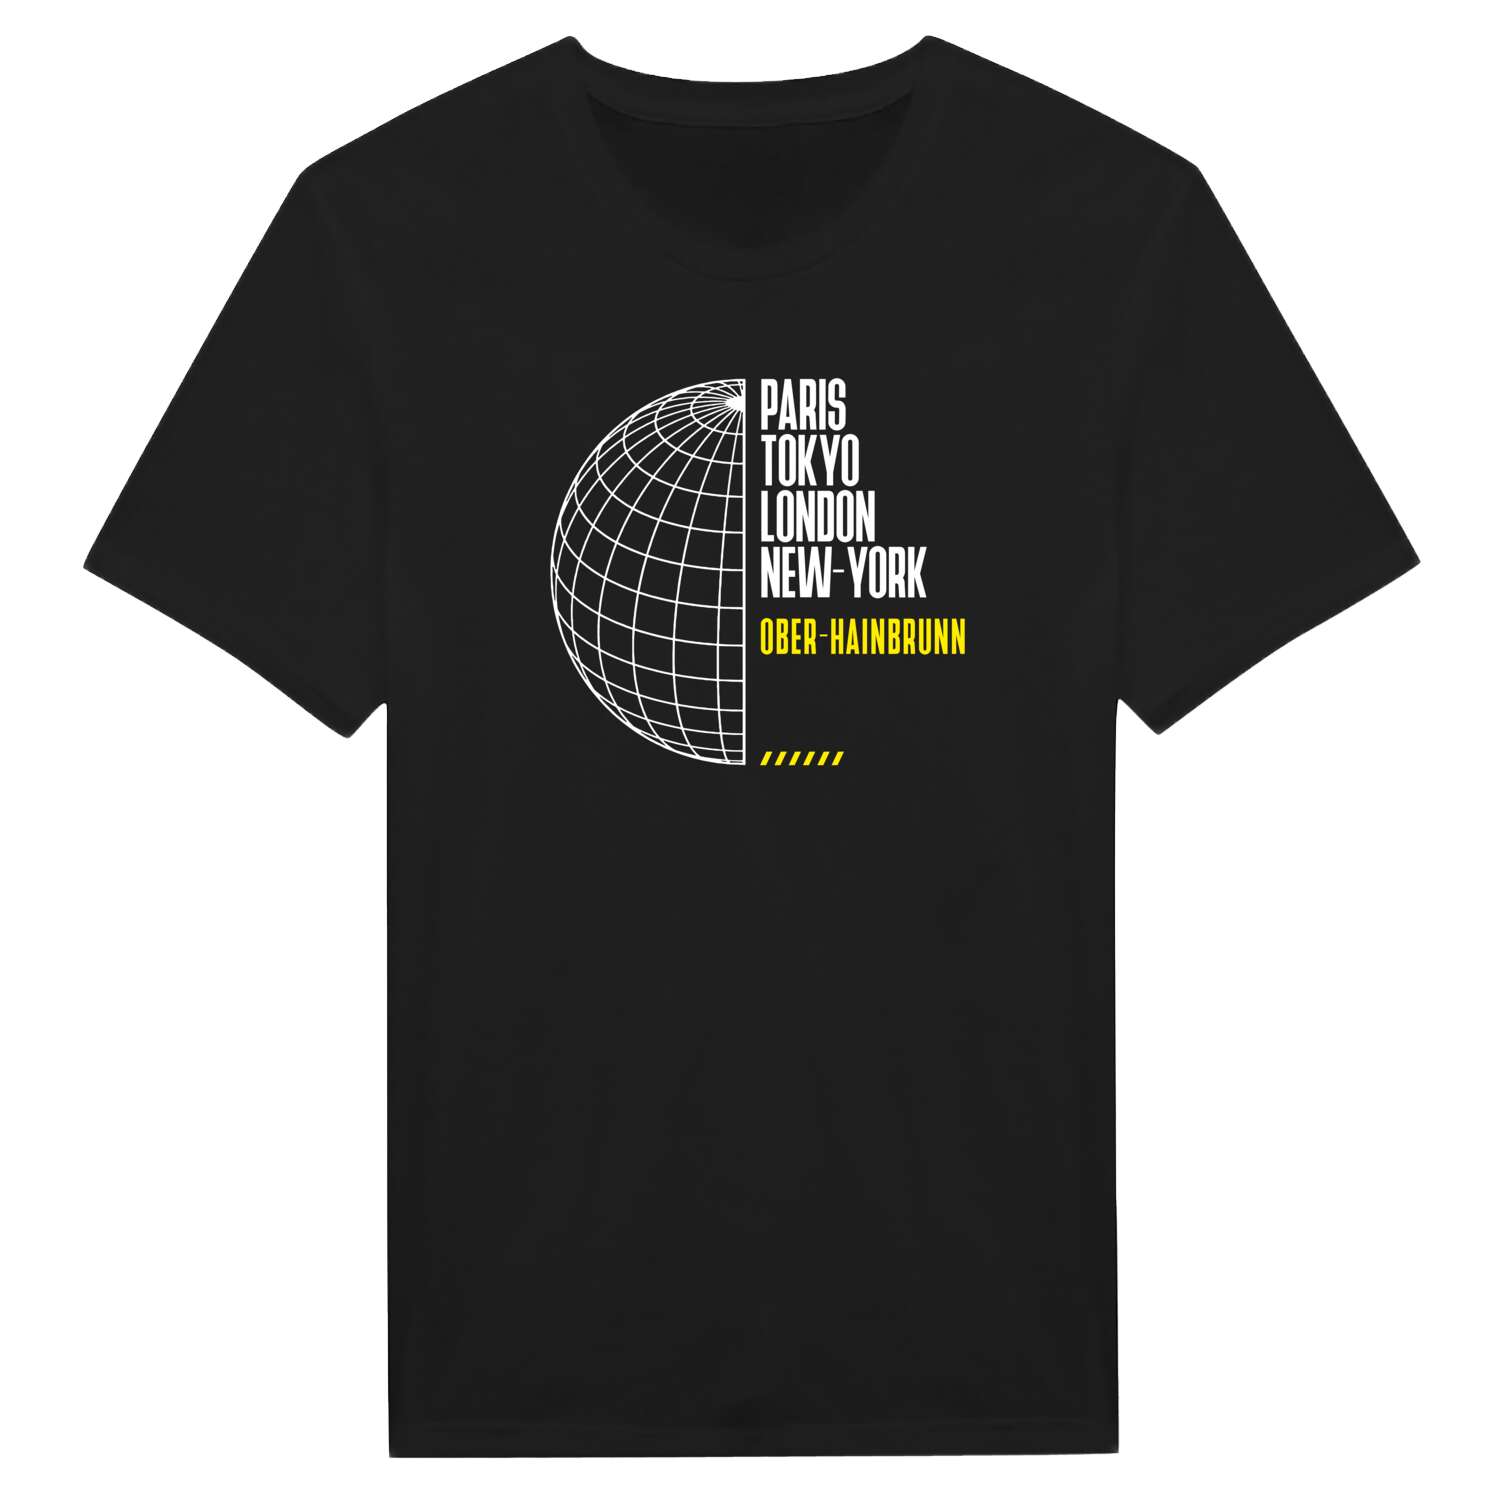 Ober-Hainbrunn T-Shirt »Paris Tokyo London«